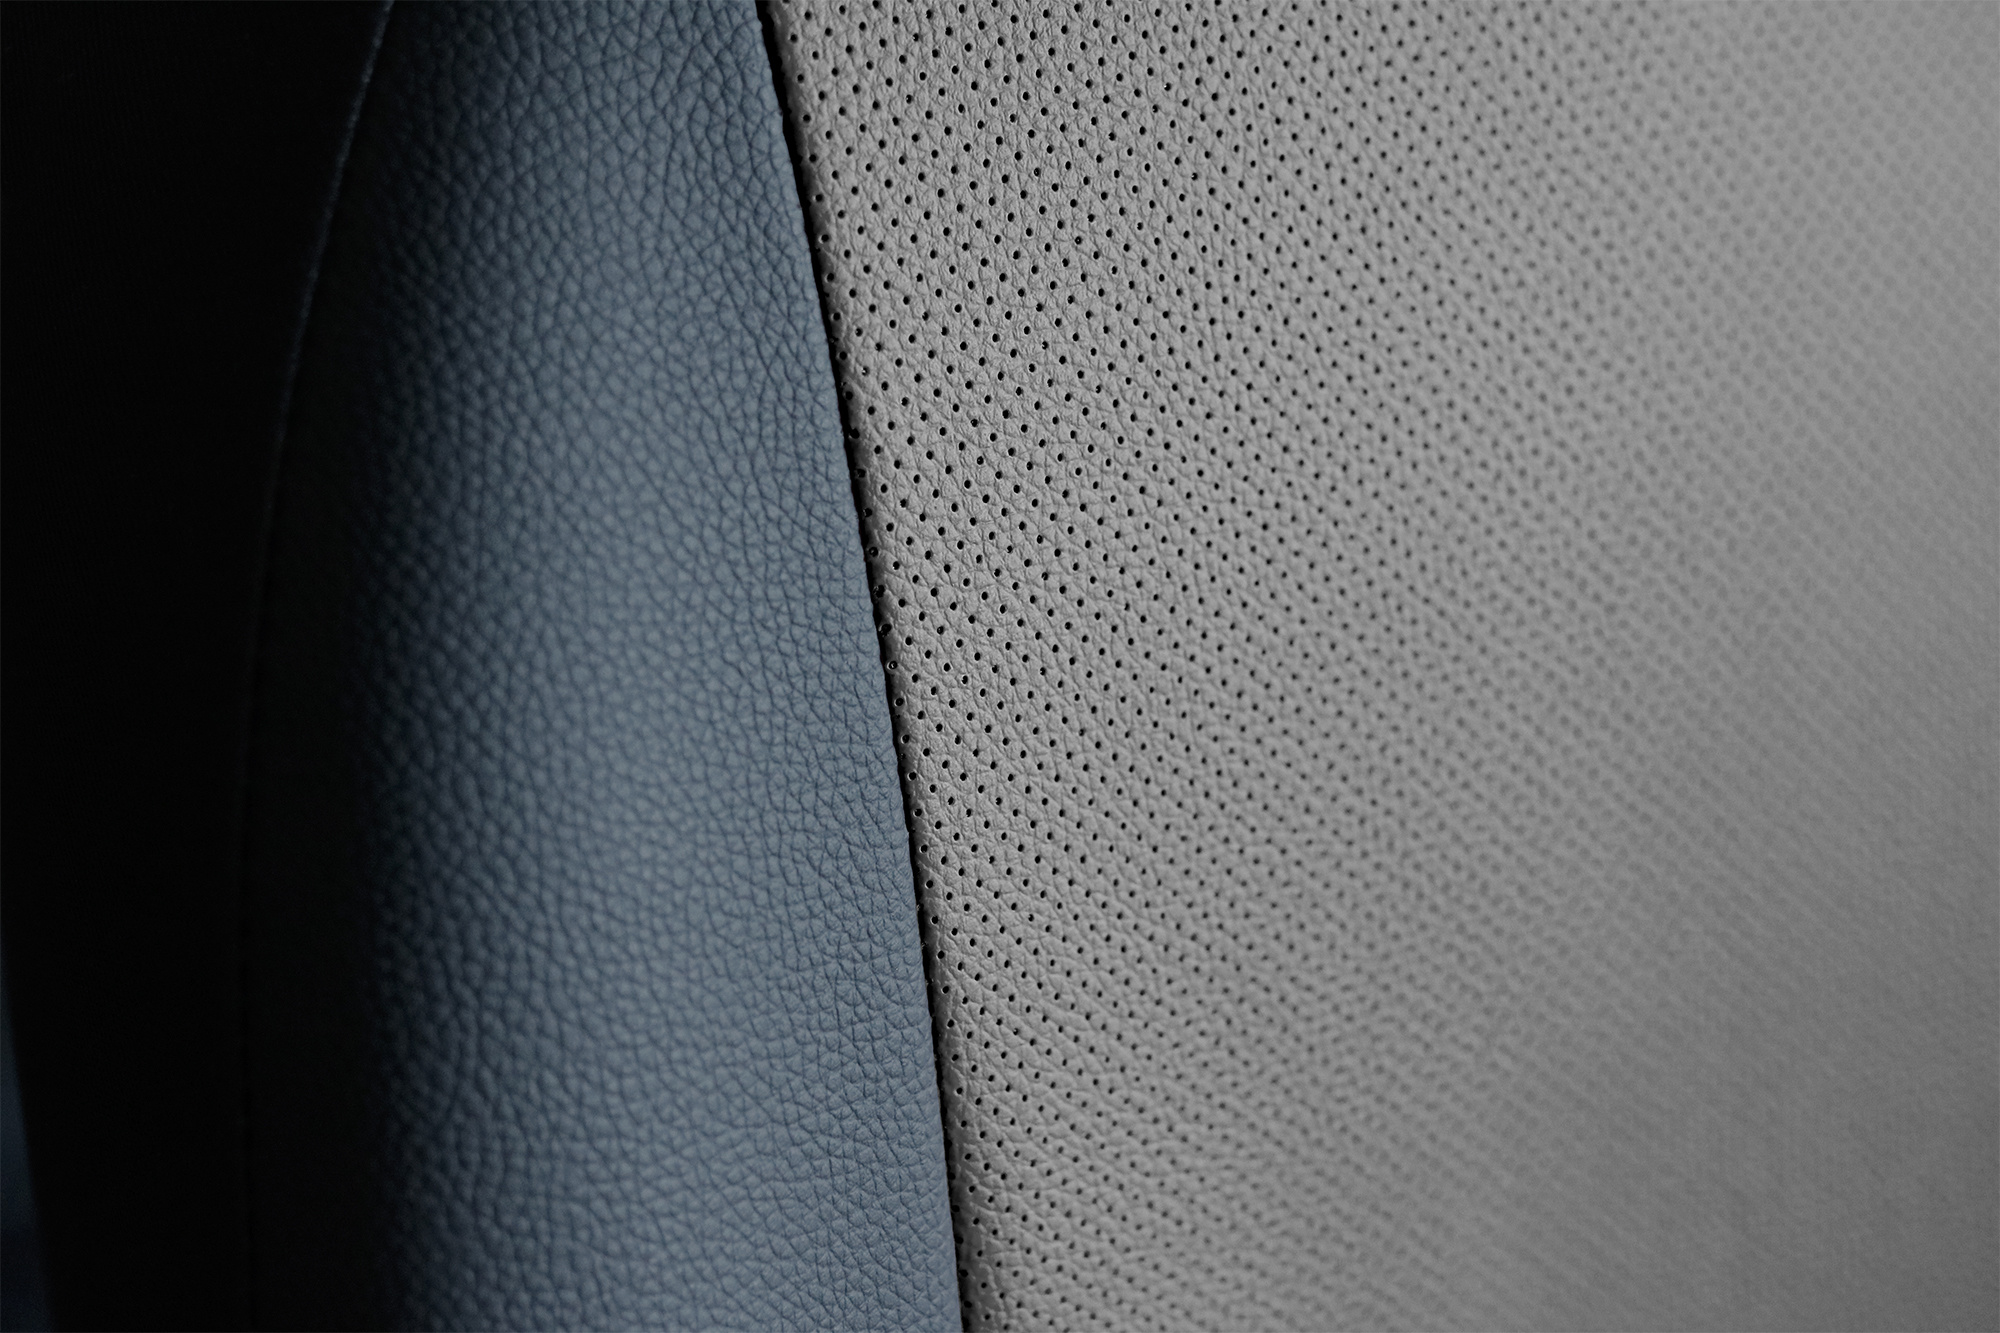 Maßgefertigter Sitzbezug Exclusive für VW Caddy - Maluch Premium